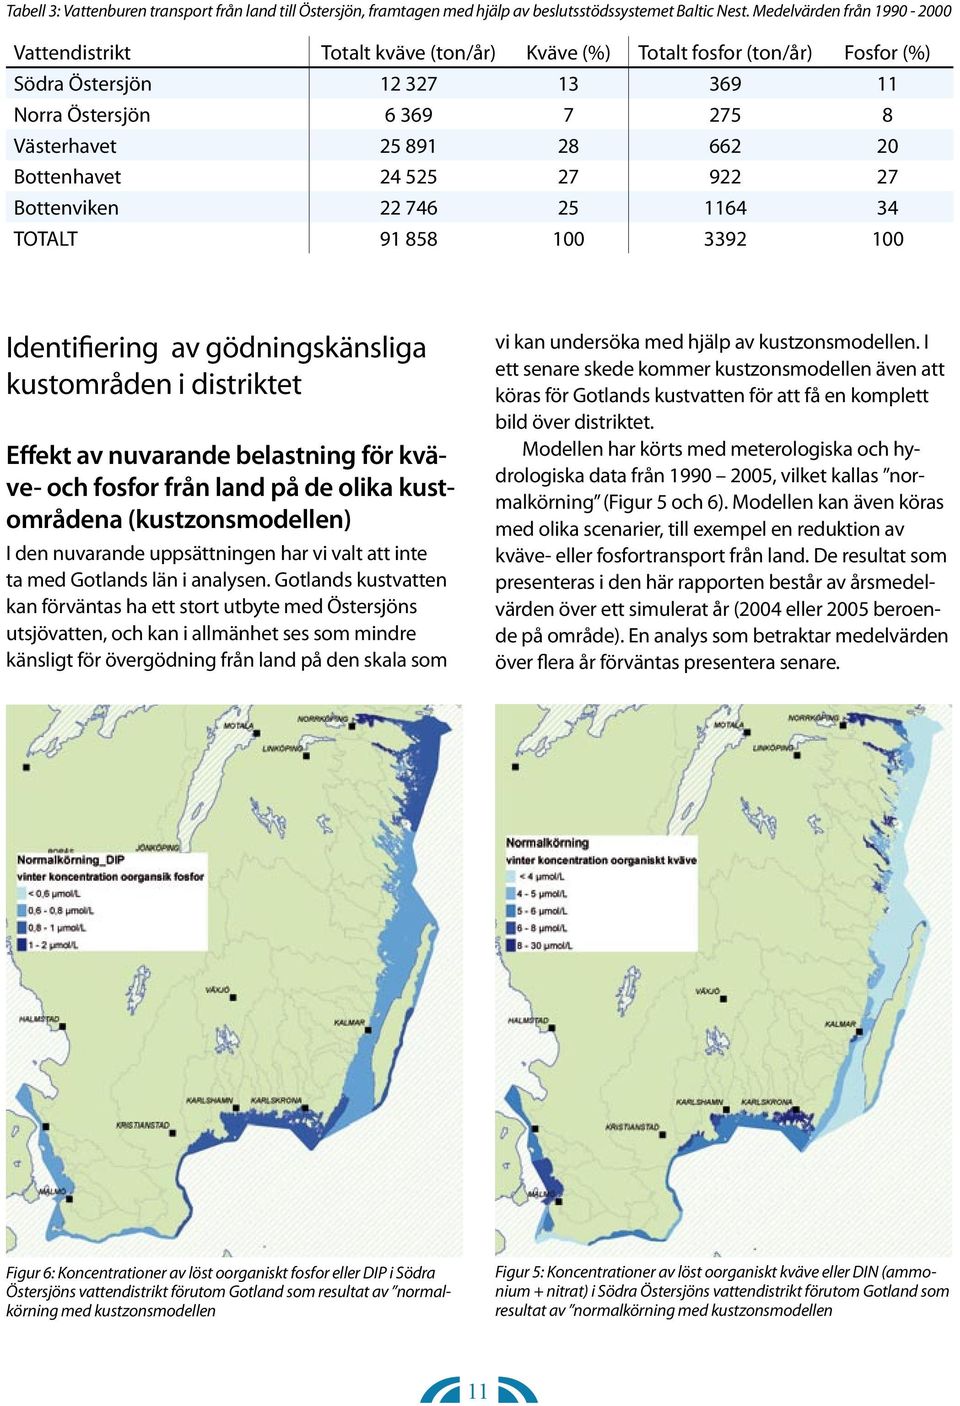 Bottenhavet 24 525 27 922 27 Bottenviken 22 746 25 1164 34 TOTALT 91 858 100 3392 100 Identifiering av gödningskänsliga i distriktet Effekt av nuvarande belastning för kväve- och fosfor från land på